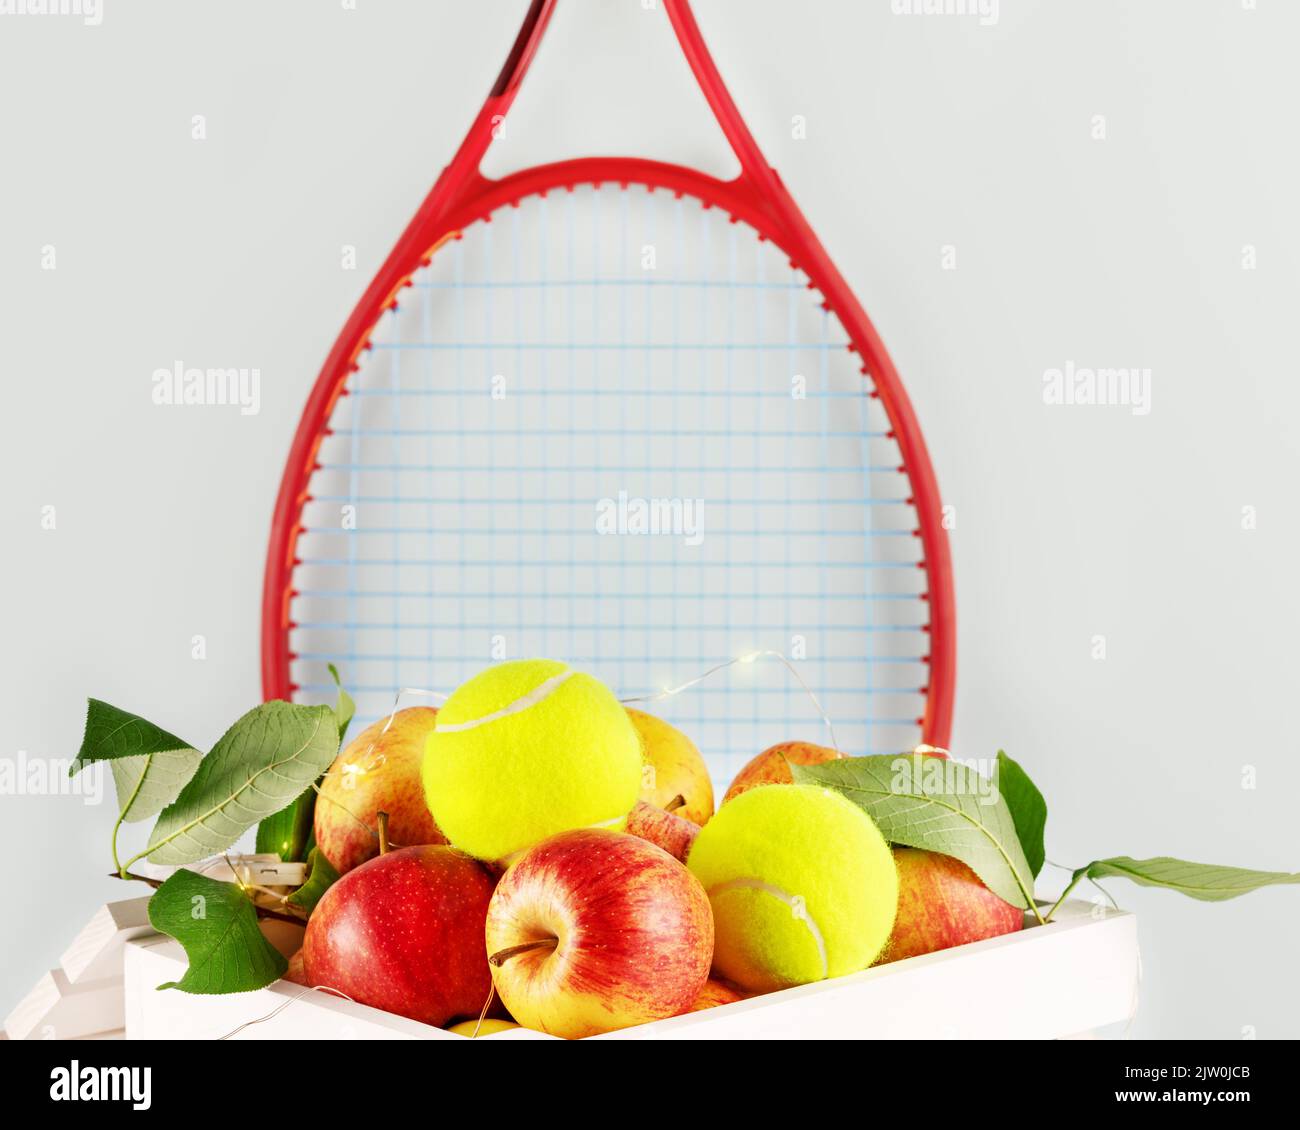 Composition de tennis avec balles de tennis jaunes, pommes dans une boîte en bois blanc avec éclairage et raquette de tennis rouge sur fond bleu. Concept de Healt Banque D'Images